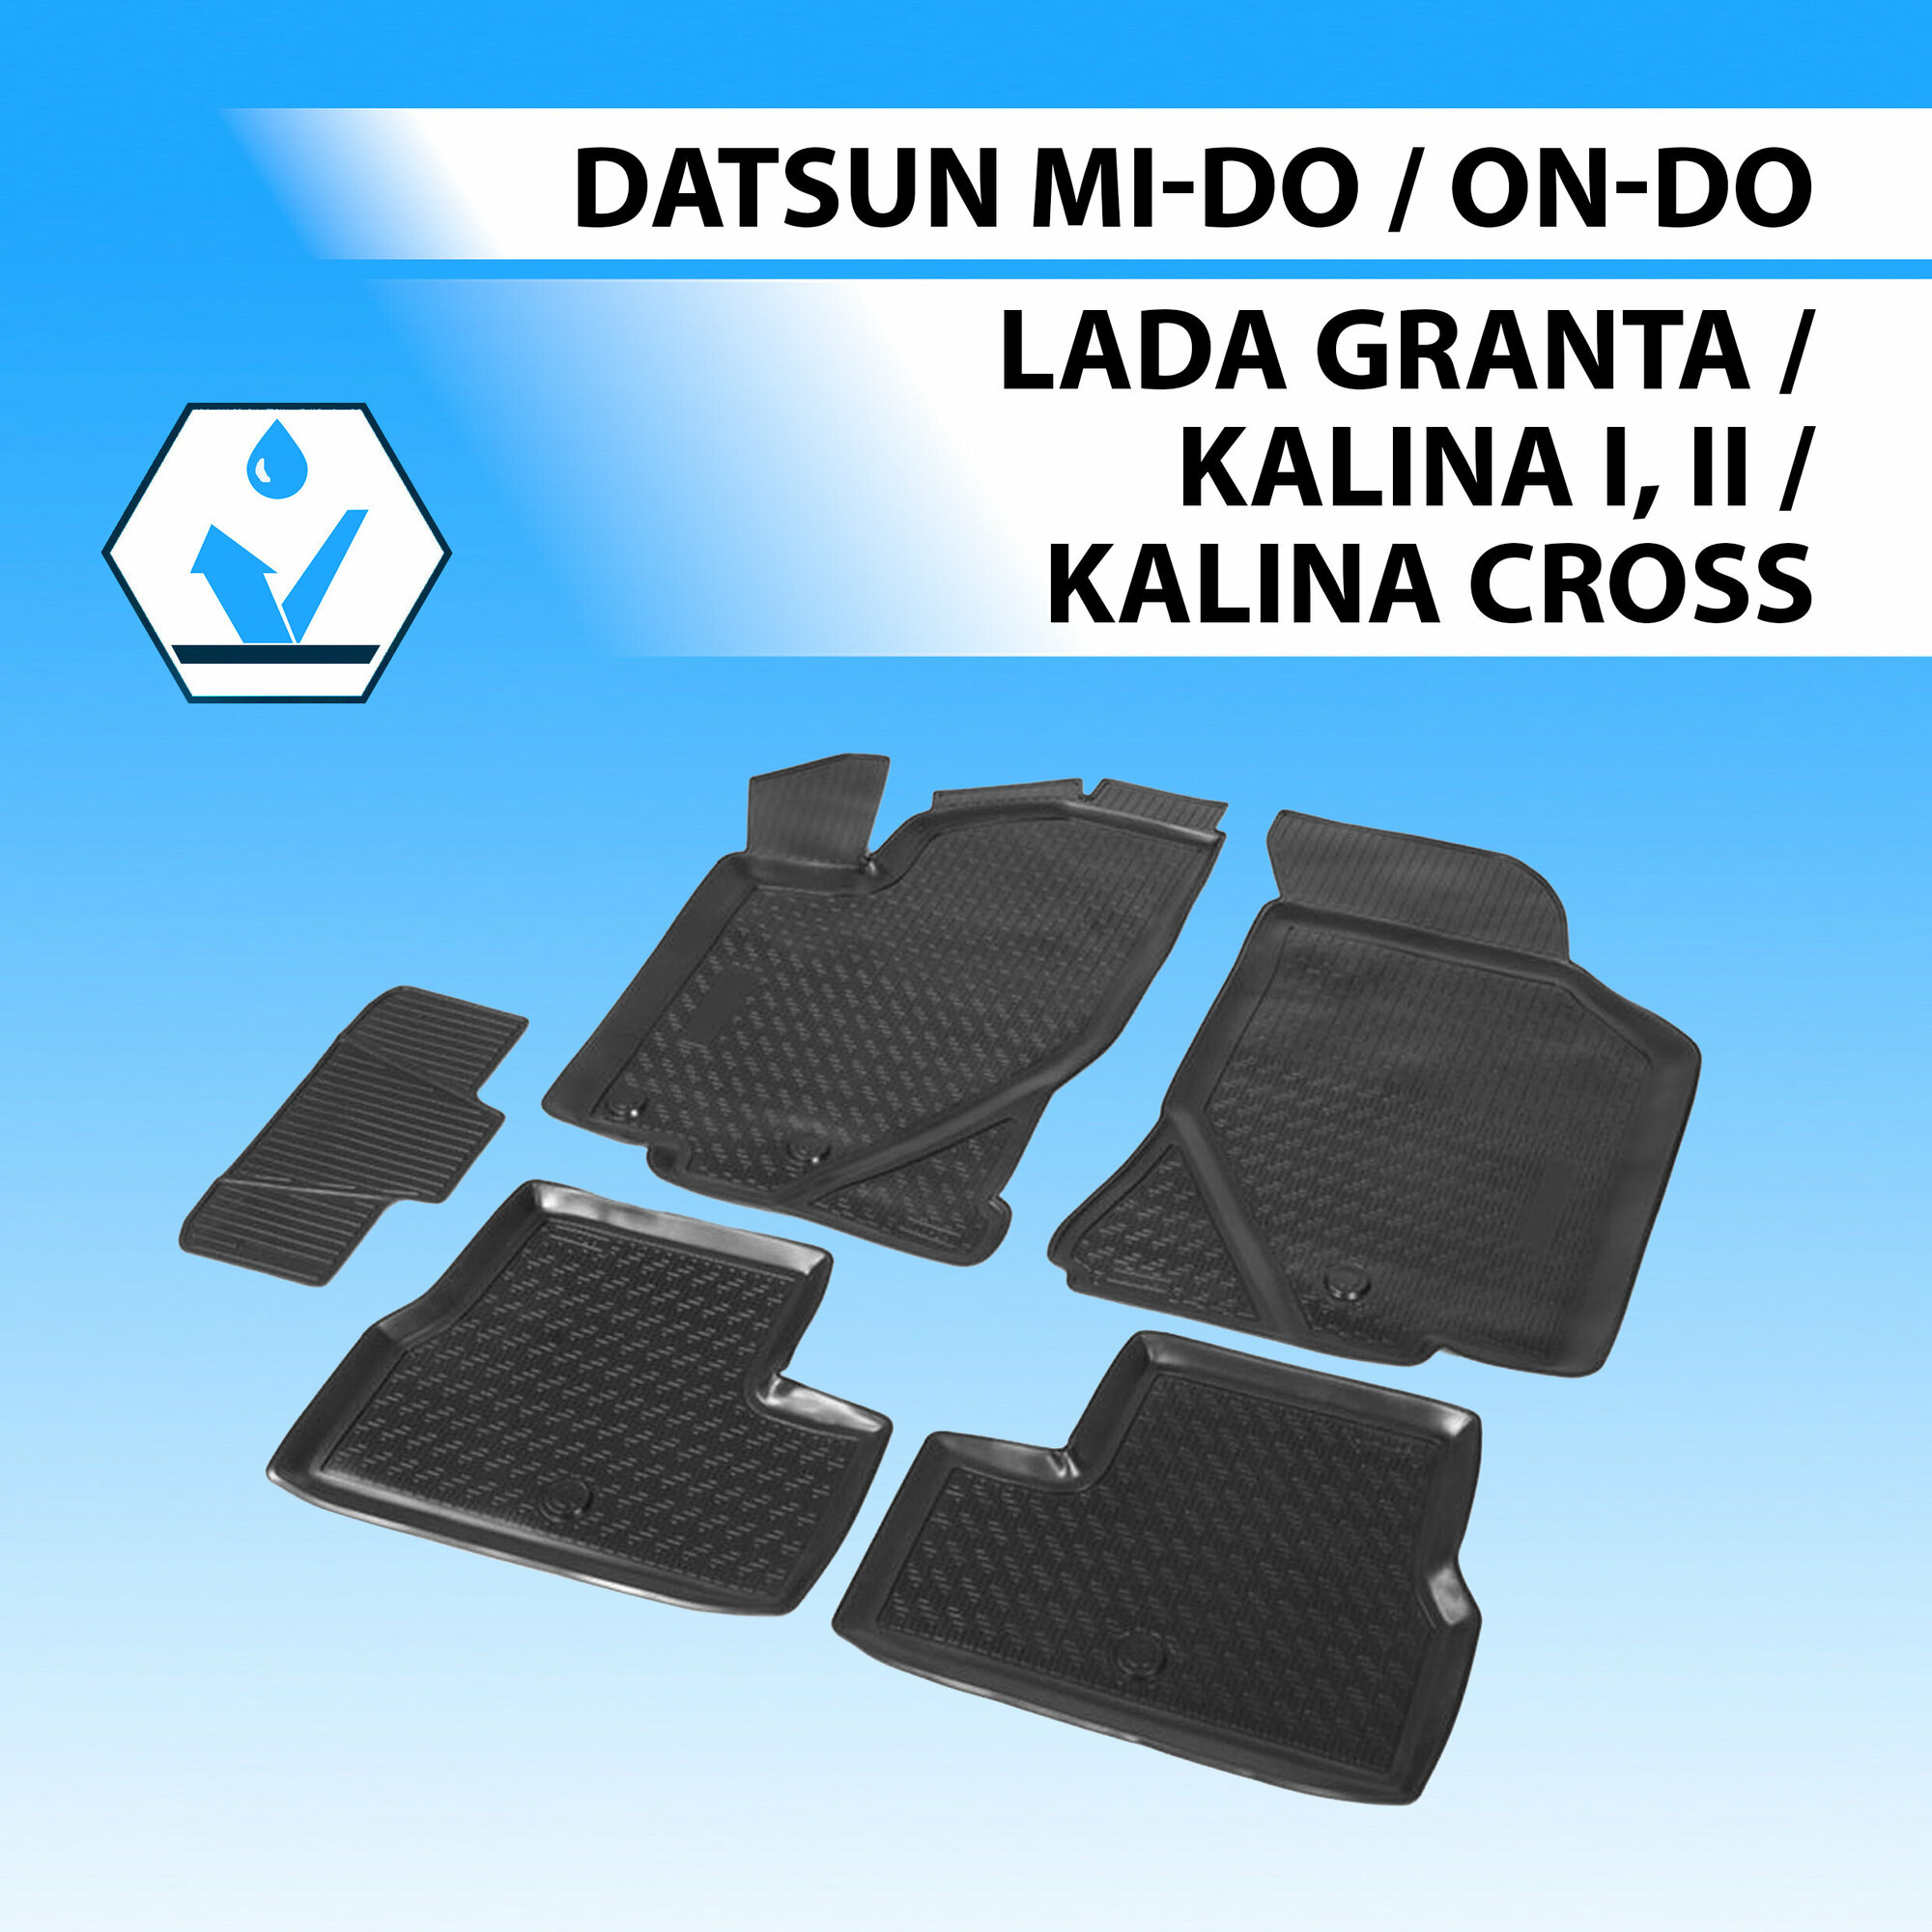     , Datsun Mi-Do/On-Do/Lada Granta Lb Sd Hb Sw 11-/Granta Cross Sw 18-/Kalina Sd Hb Sw 0...